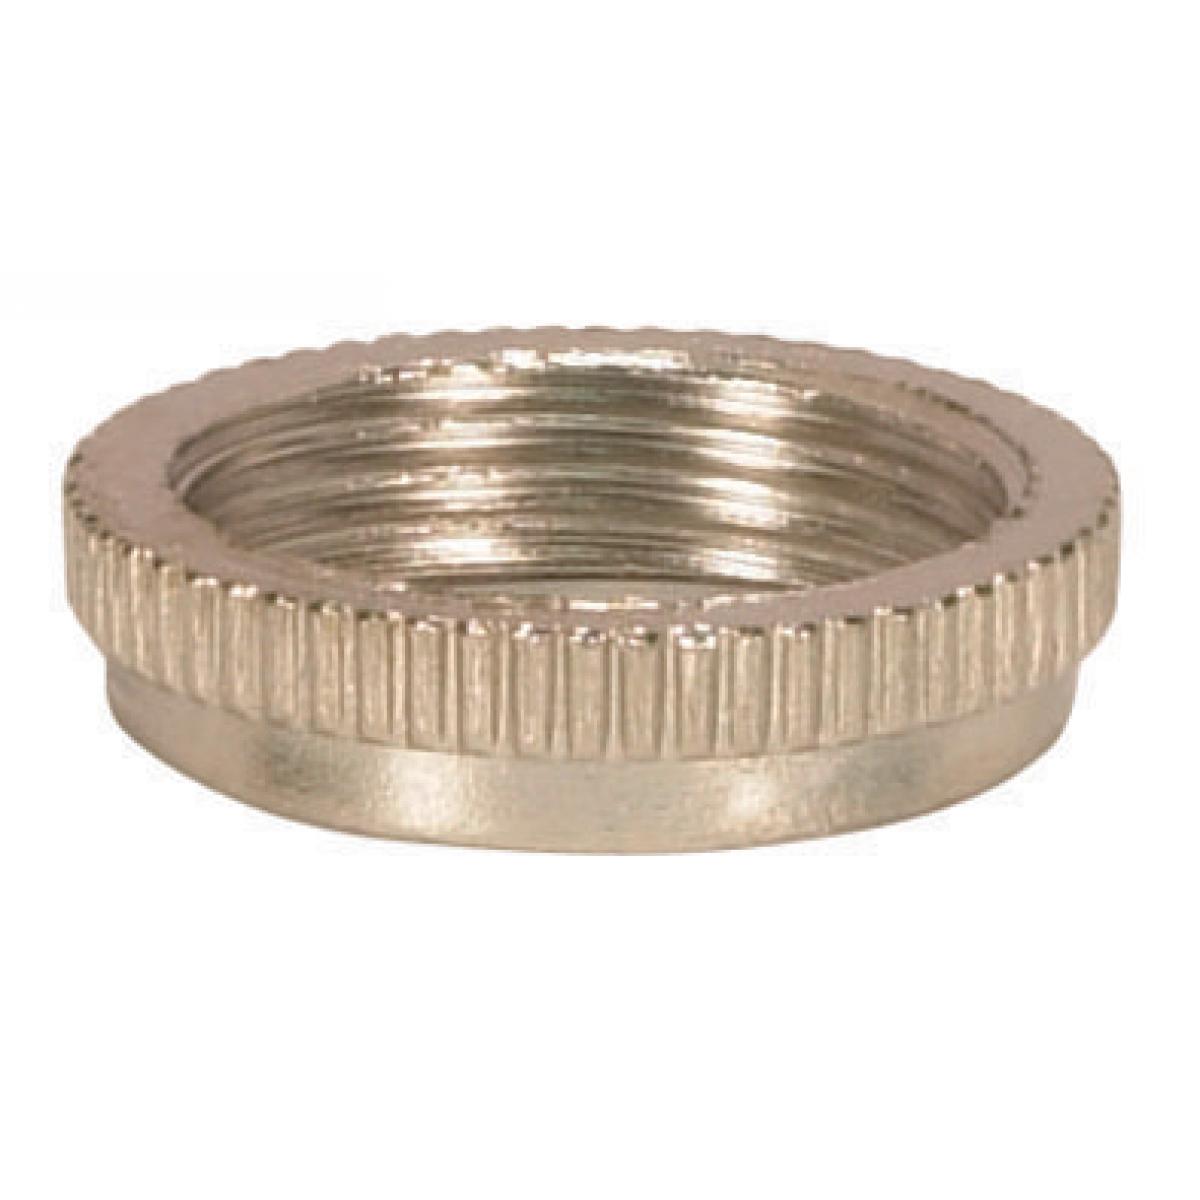 Satco 80-1486 Ring For Threaded And Candelabra Sockets 1" Outer Diameter 3/4" Inner Diameter 13/16" Thread Size 20 TPI Chrome Finish